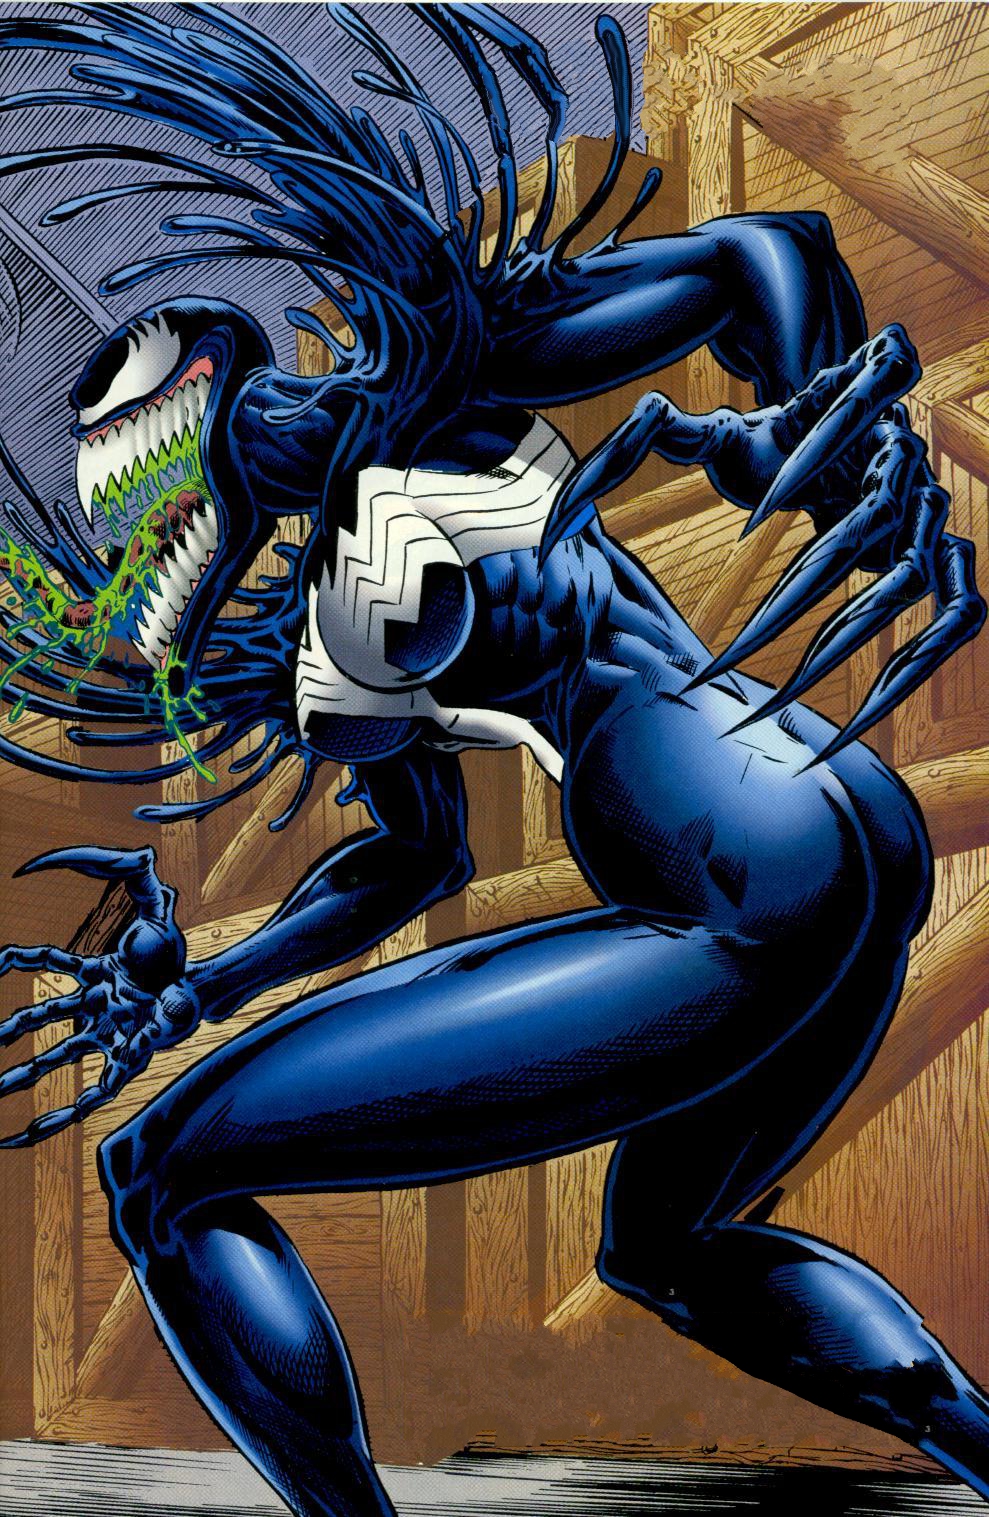 She Venom Images